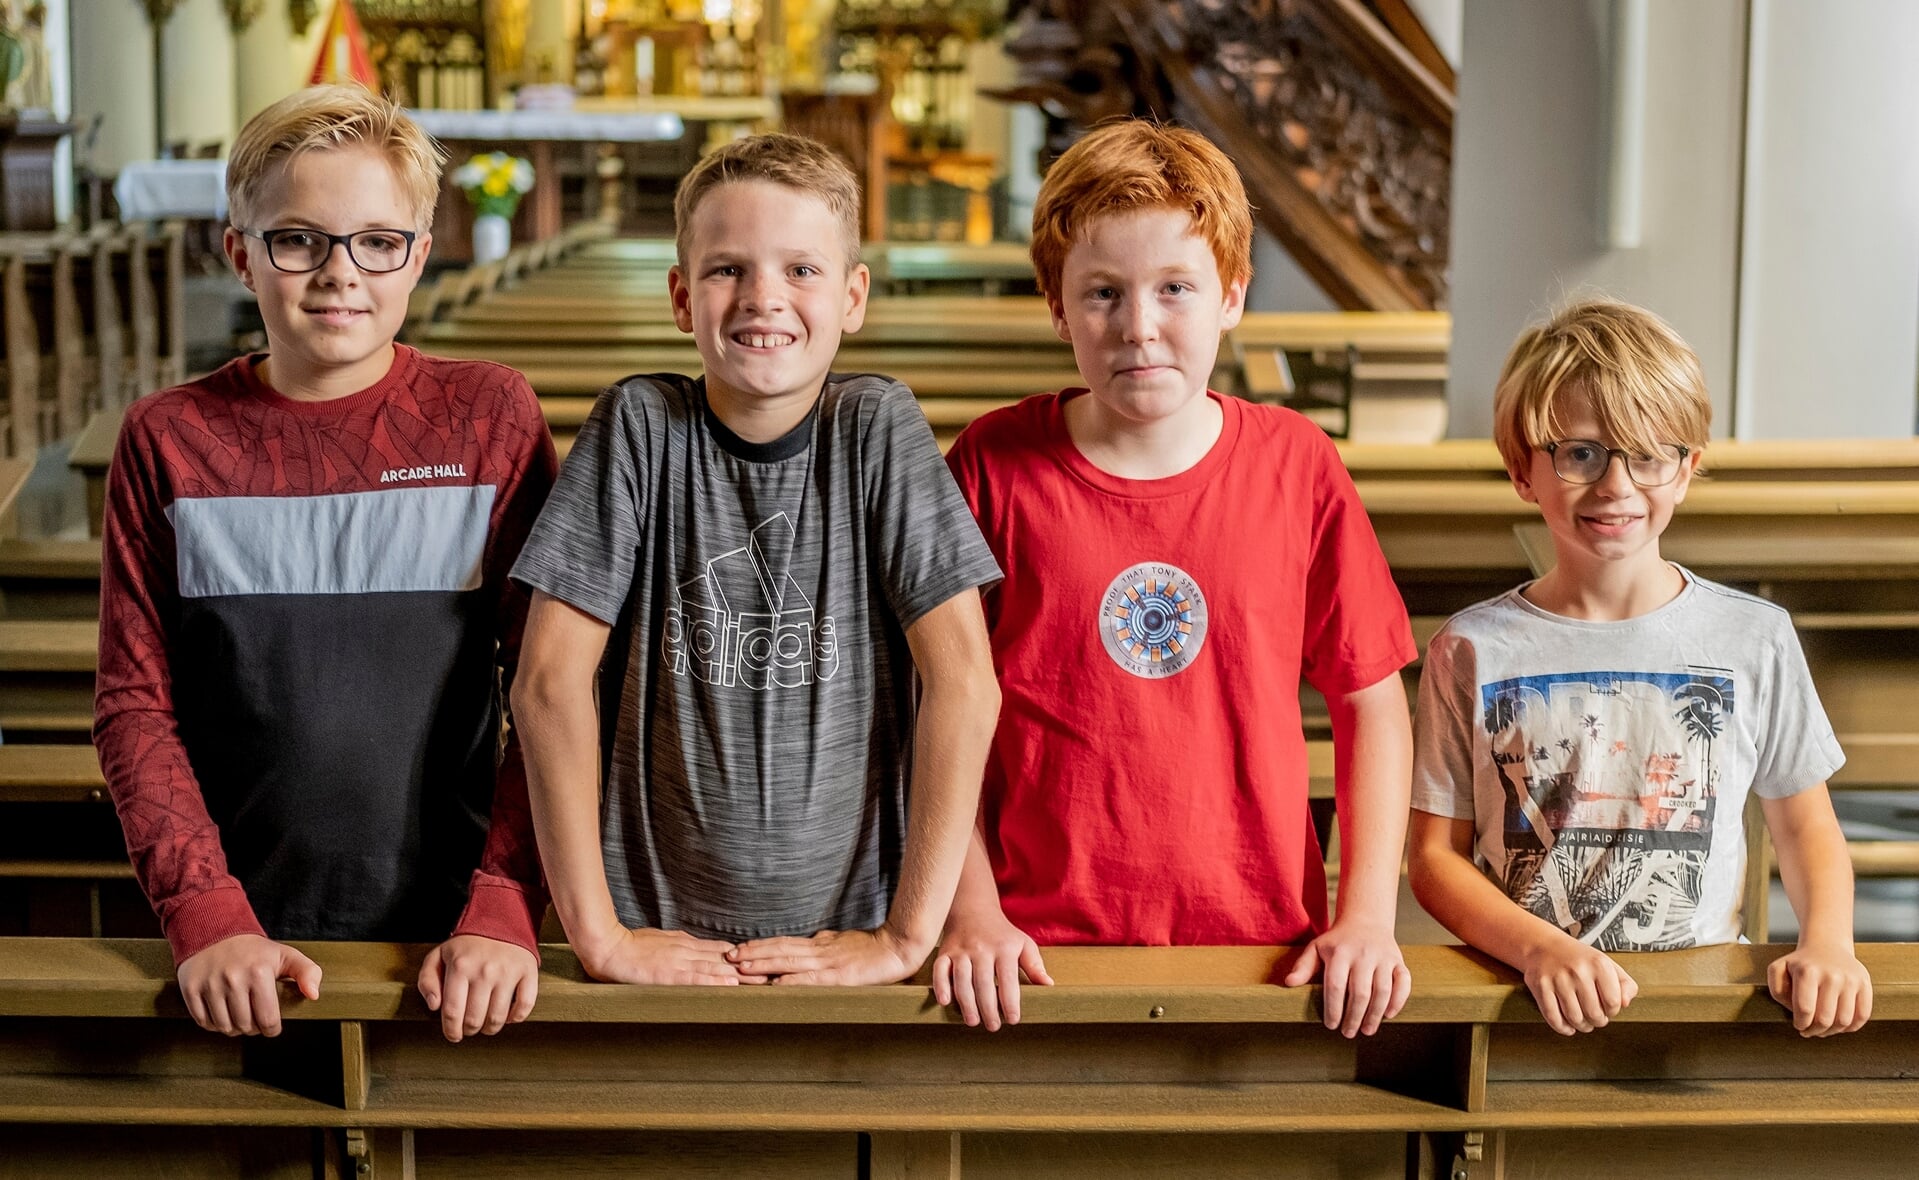 V.l.n.r: Thijs, Finn, Thomas en Ronin zijn in de Sint-Petrusbasiliek omdat ze die gaan nabouwen in Minecraft.